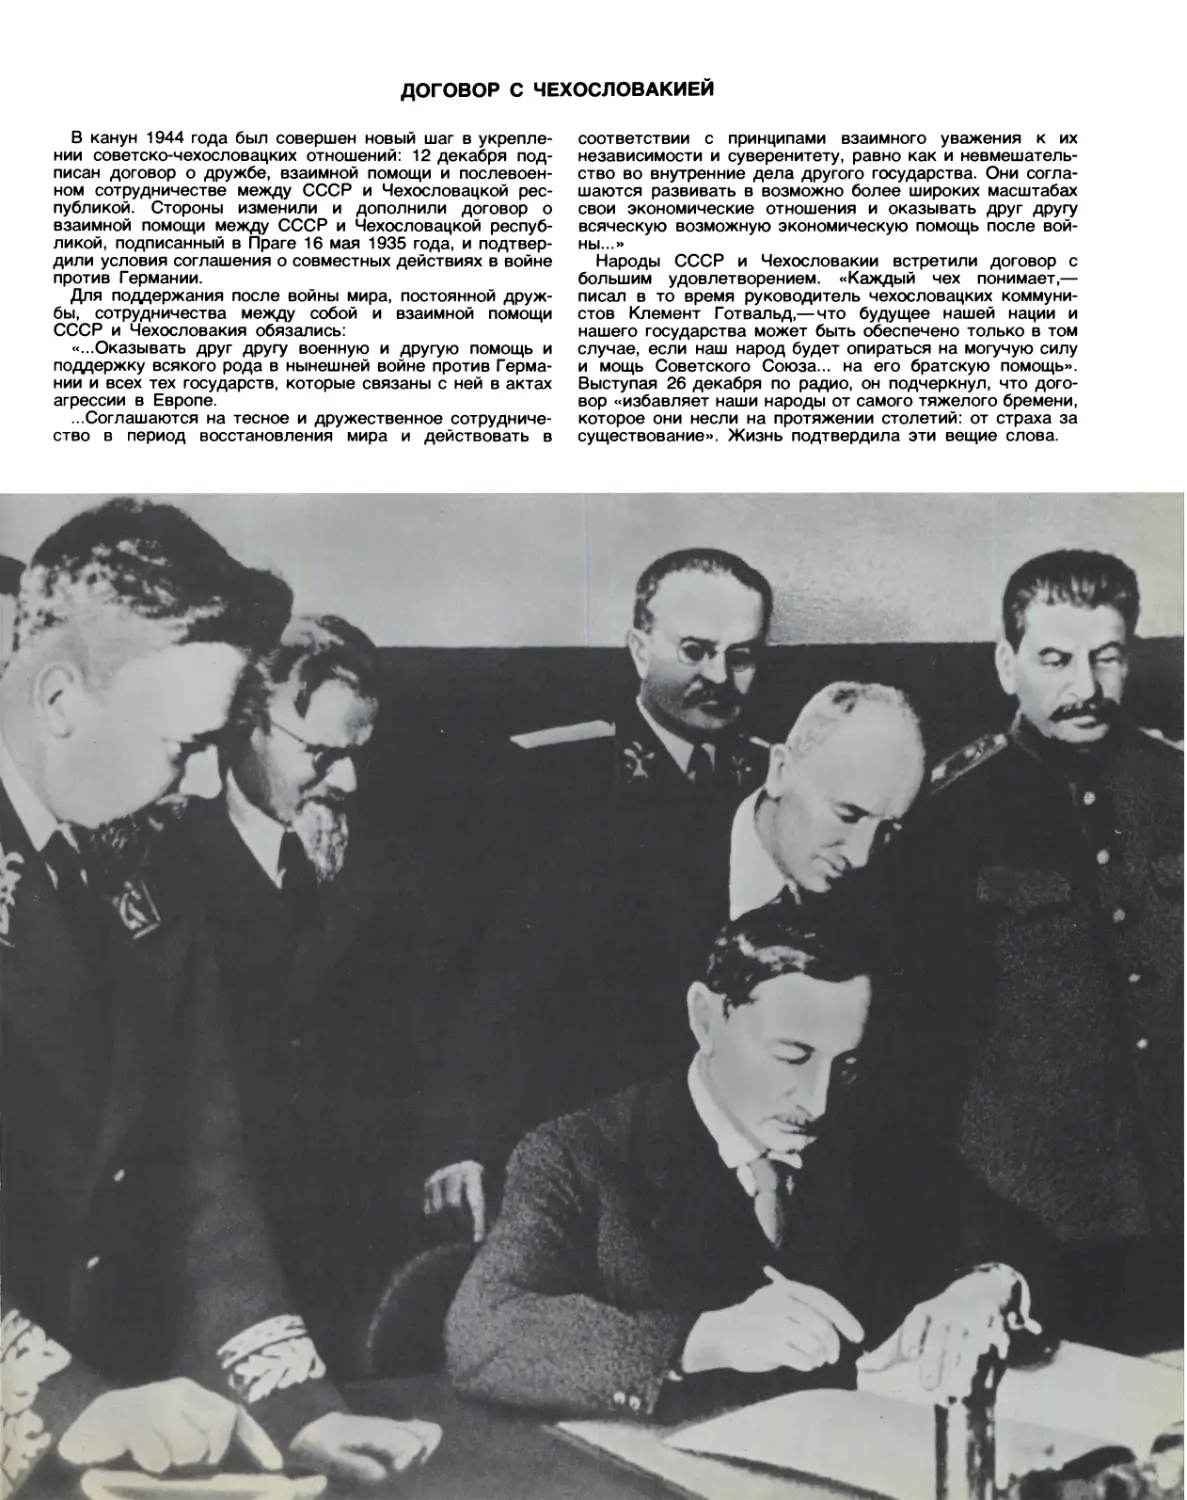 Договор с Чехословакией